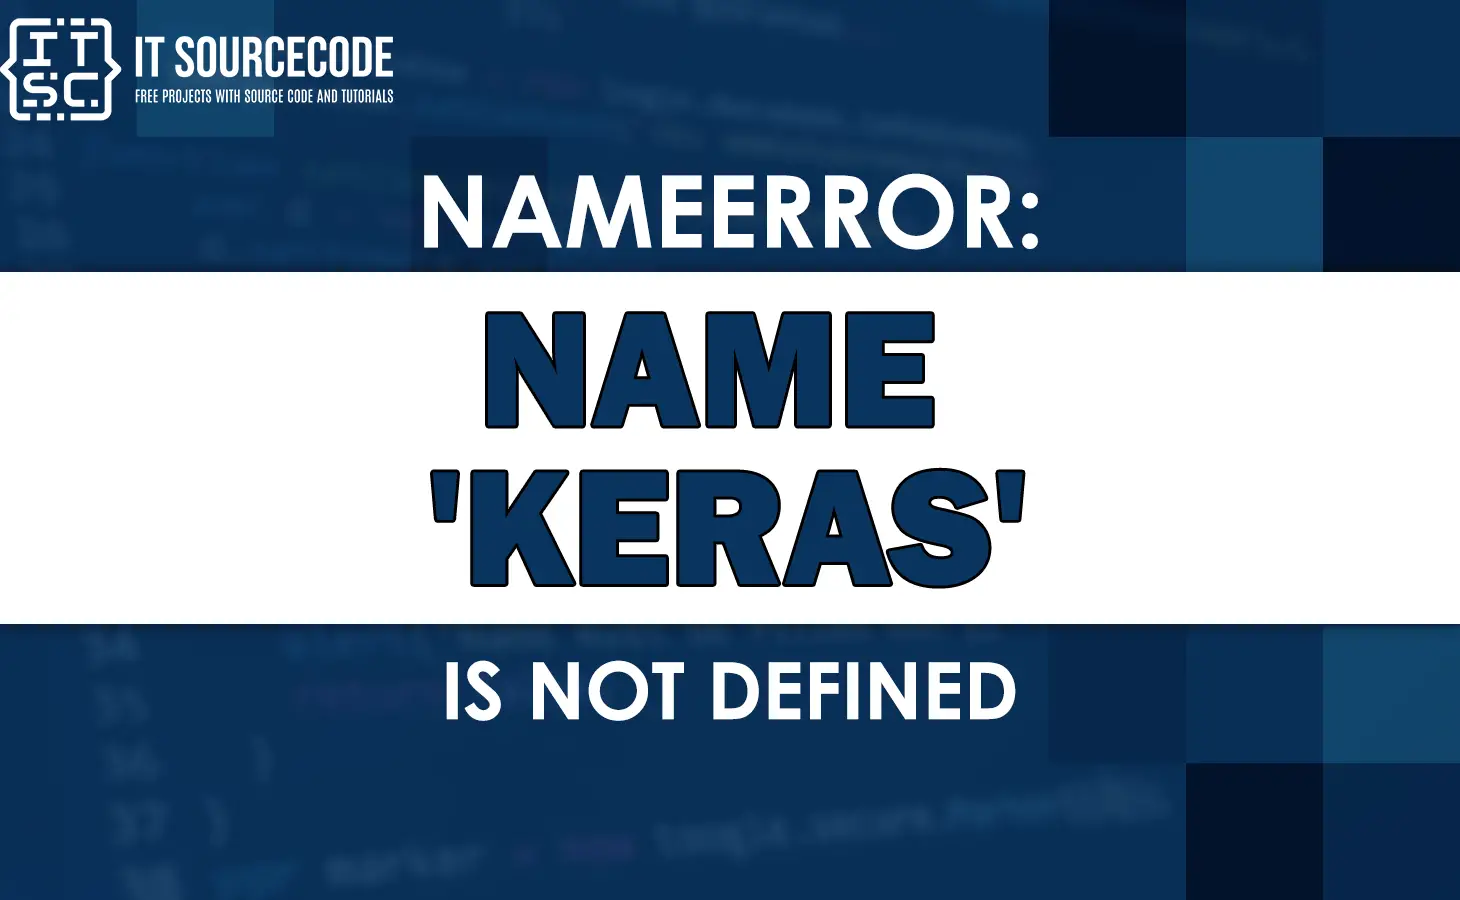 Nameerror name keras is not defined